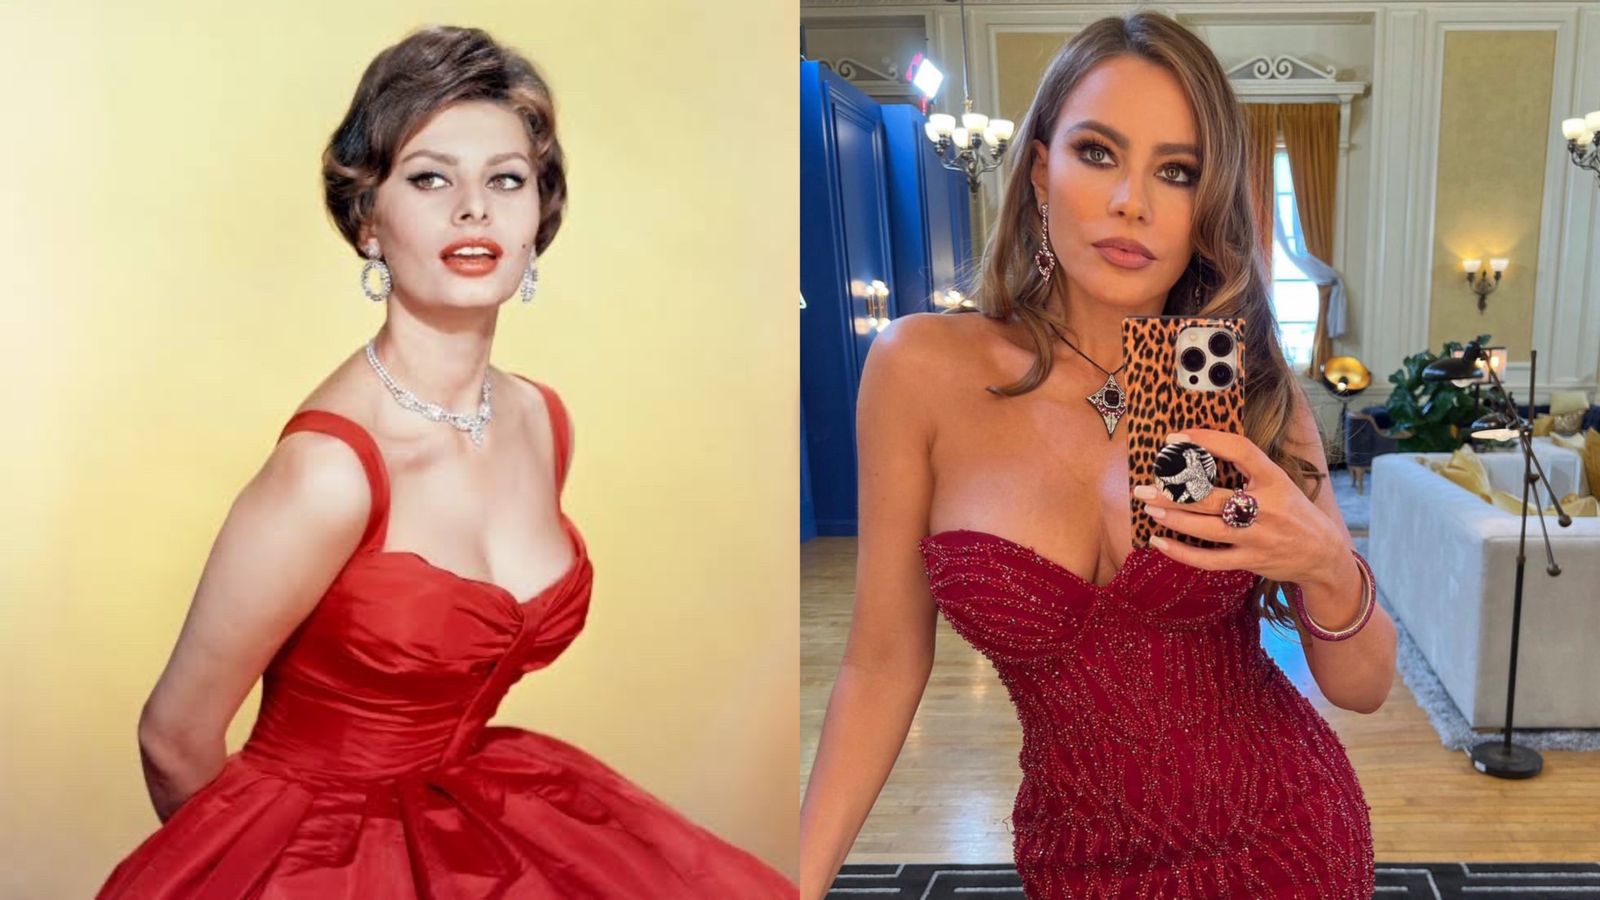 Sofía Vergara y Shophia Loren en vestido rojo tienen características similares en sus rasgos faciales (Fotos: Instagram/@sofiavergara/Foto especial)